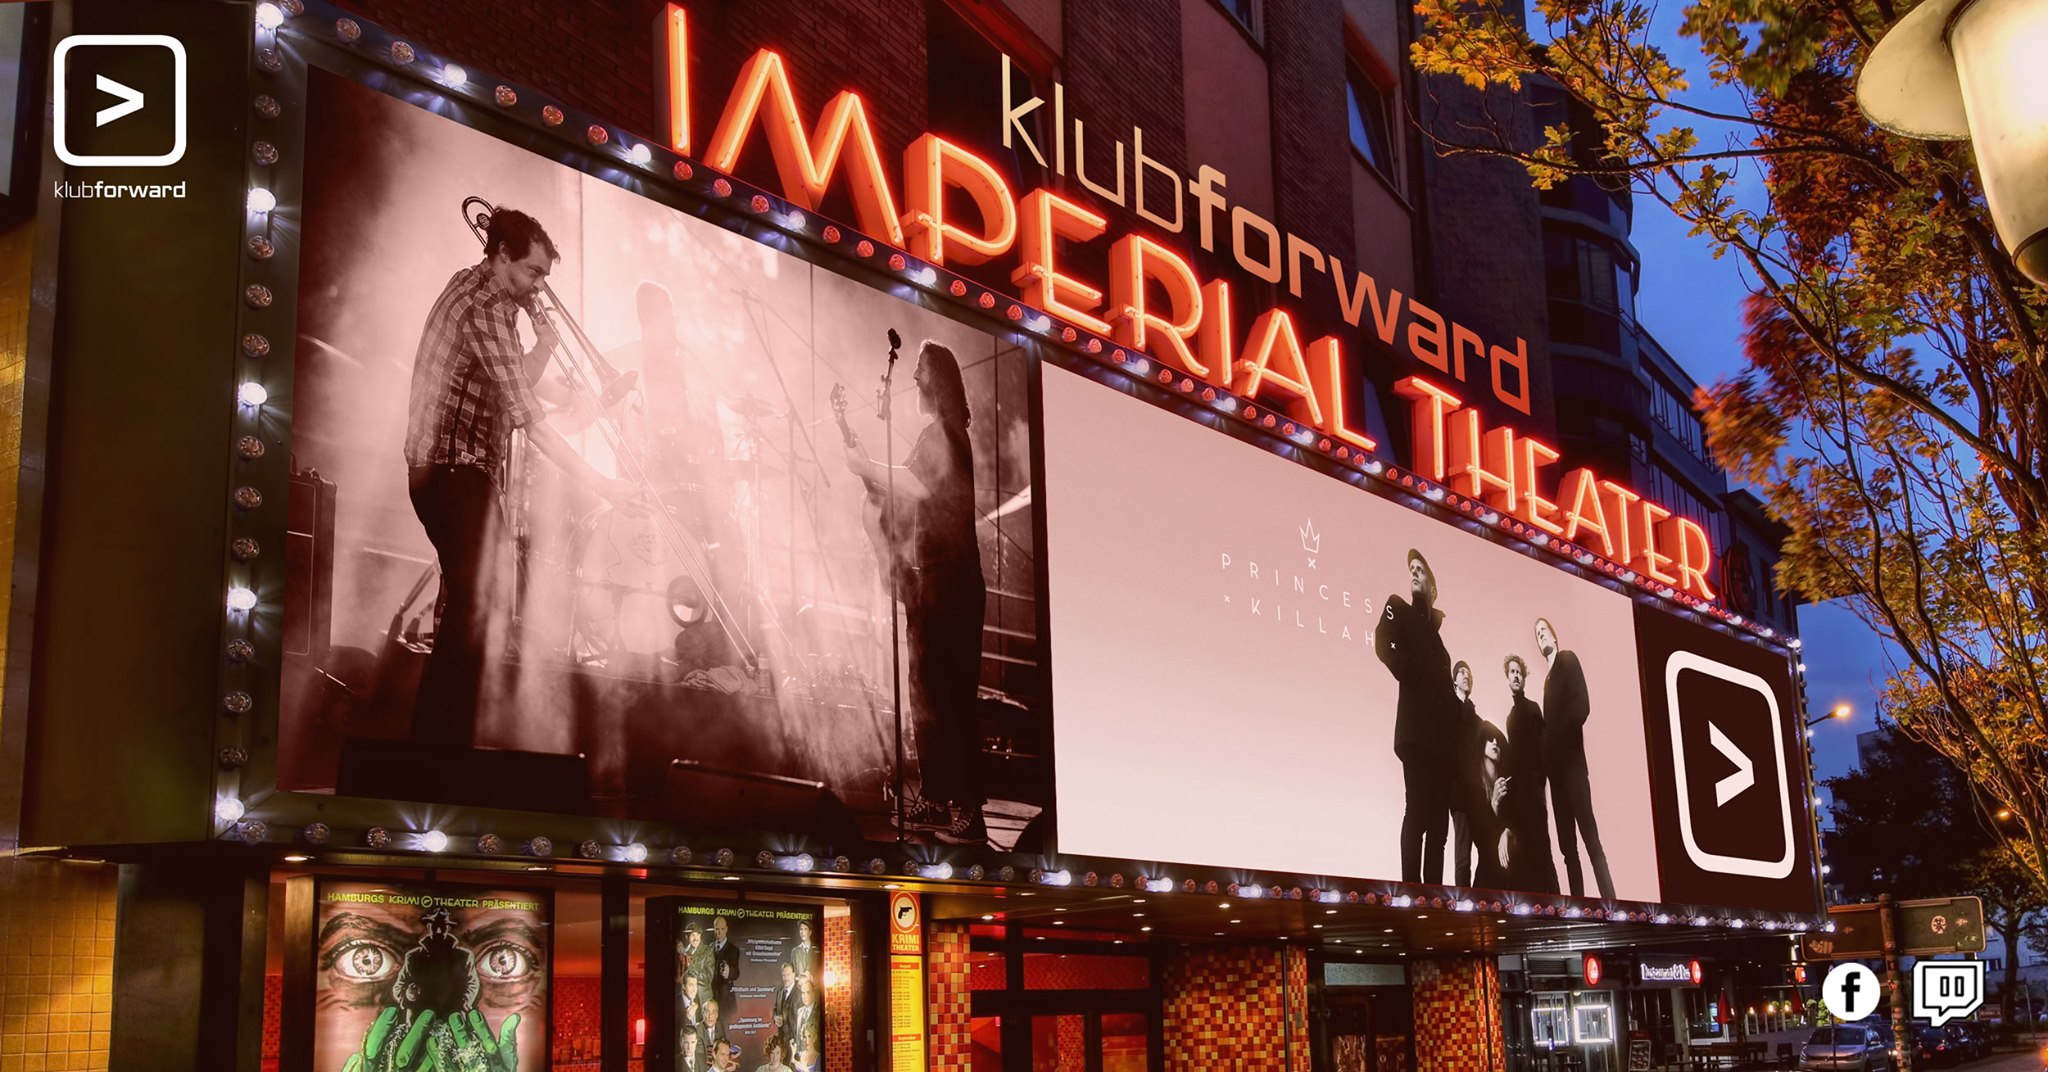 klub forwart präsentiert einen außergewöhnlichen Stream aus dem Imperial Theater.